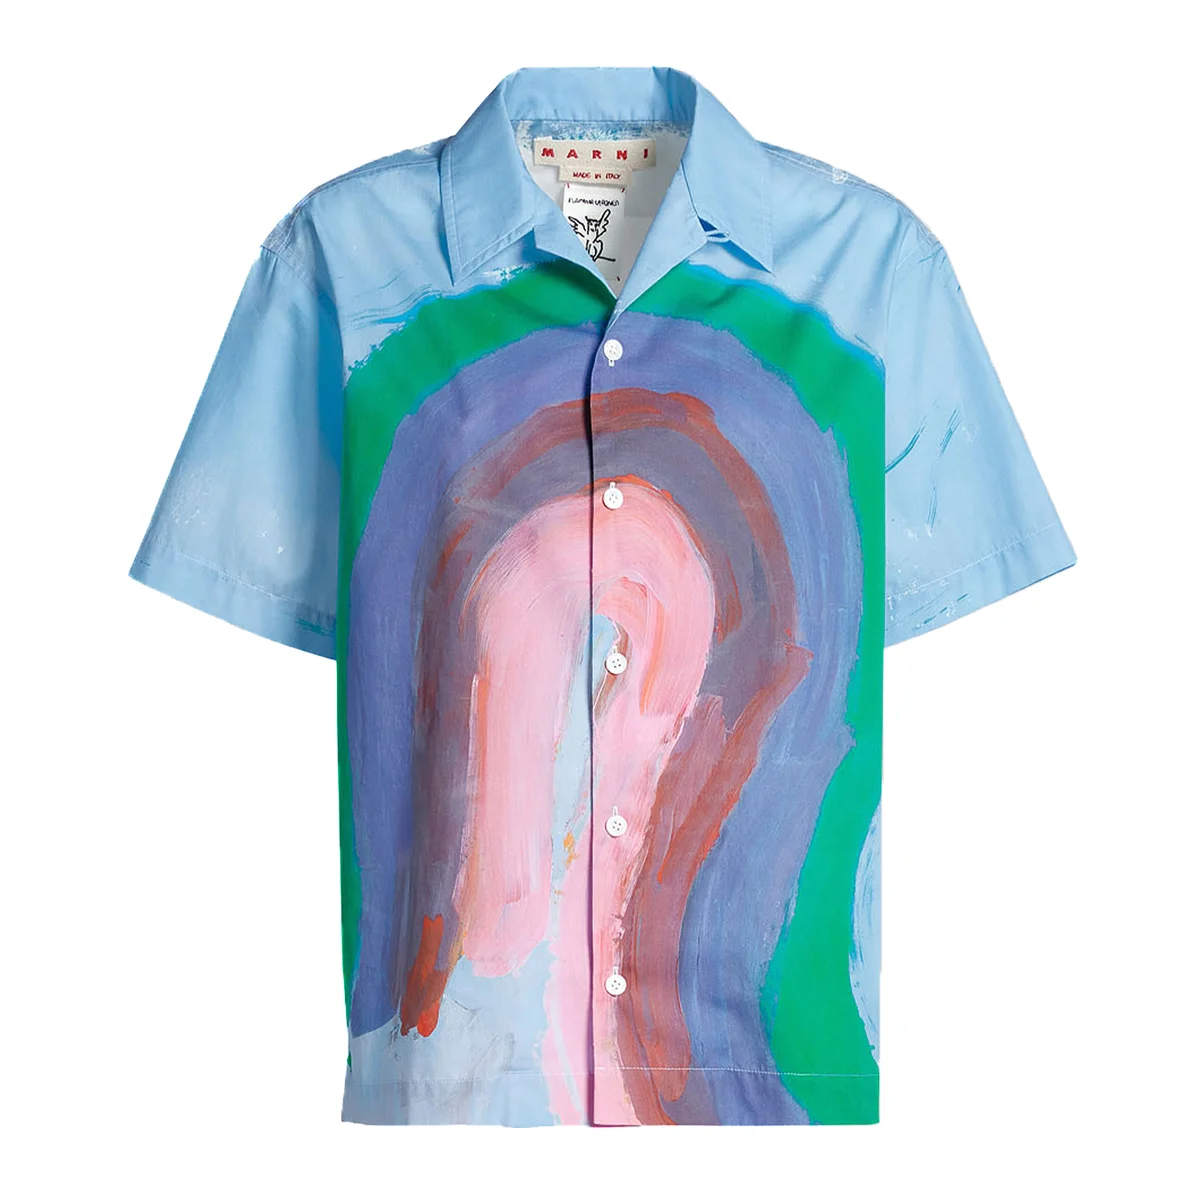 マルニのシャツ「レインボーペイントボウリングシャツ」